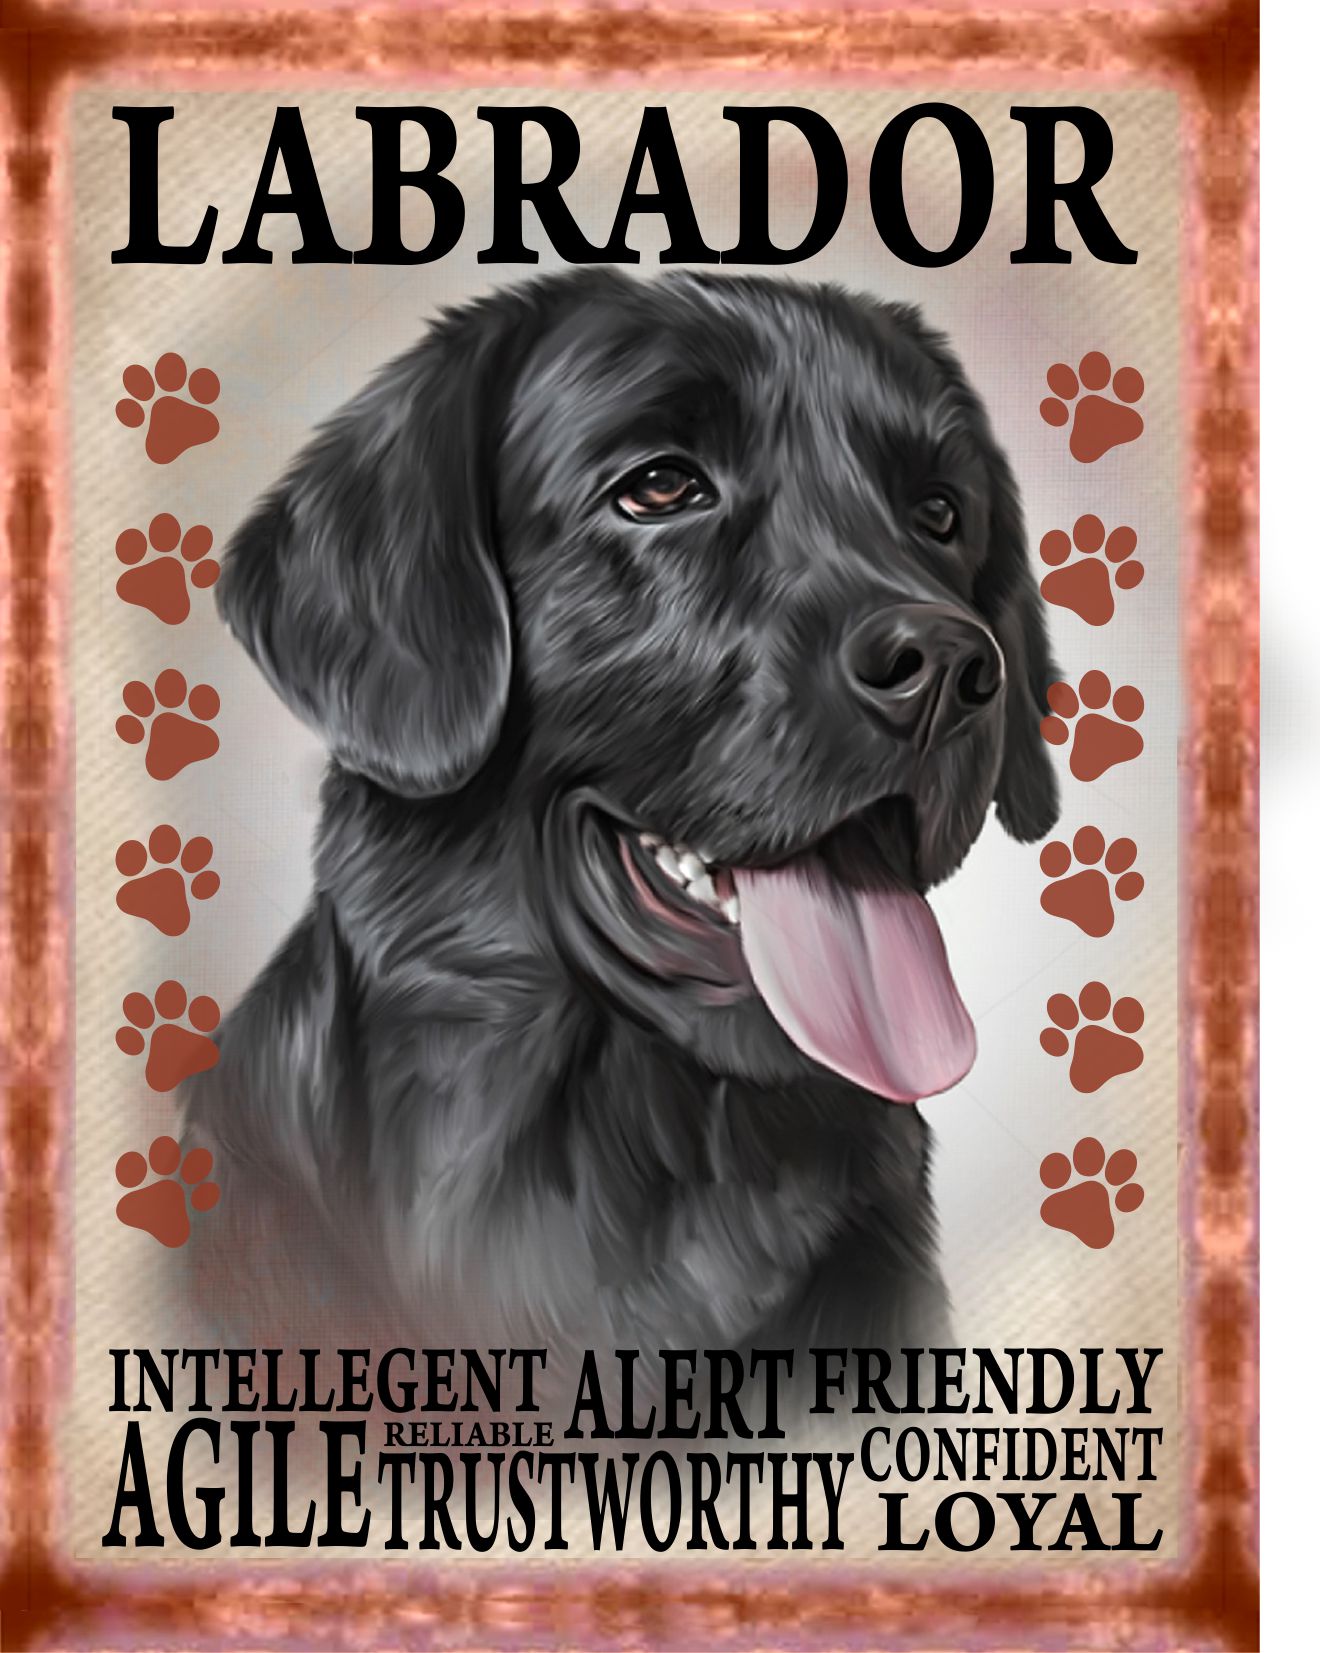 Labrador Vintage Plaque